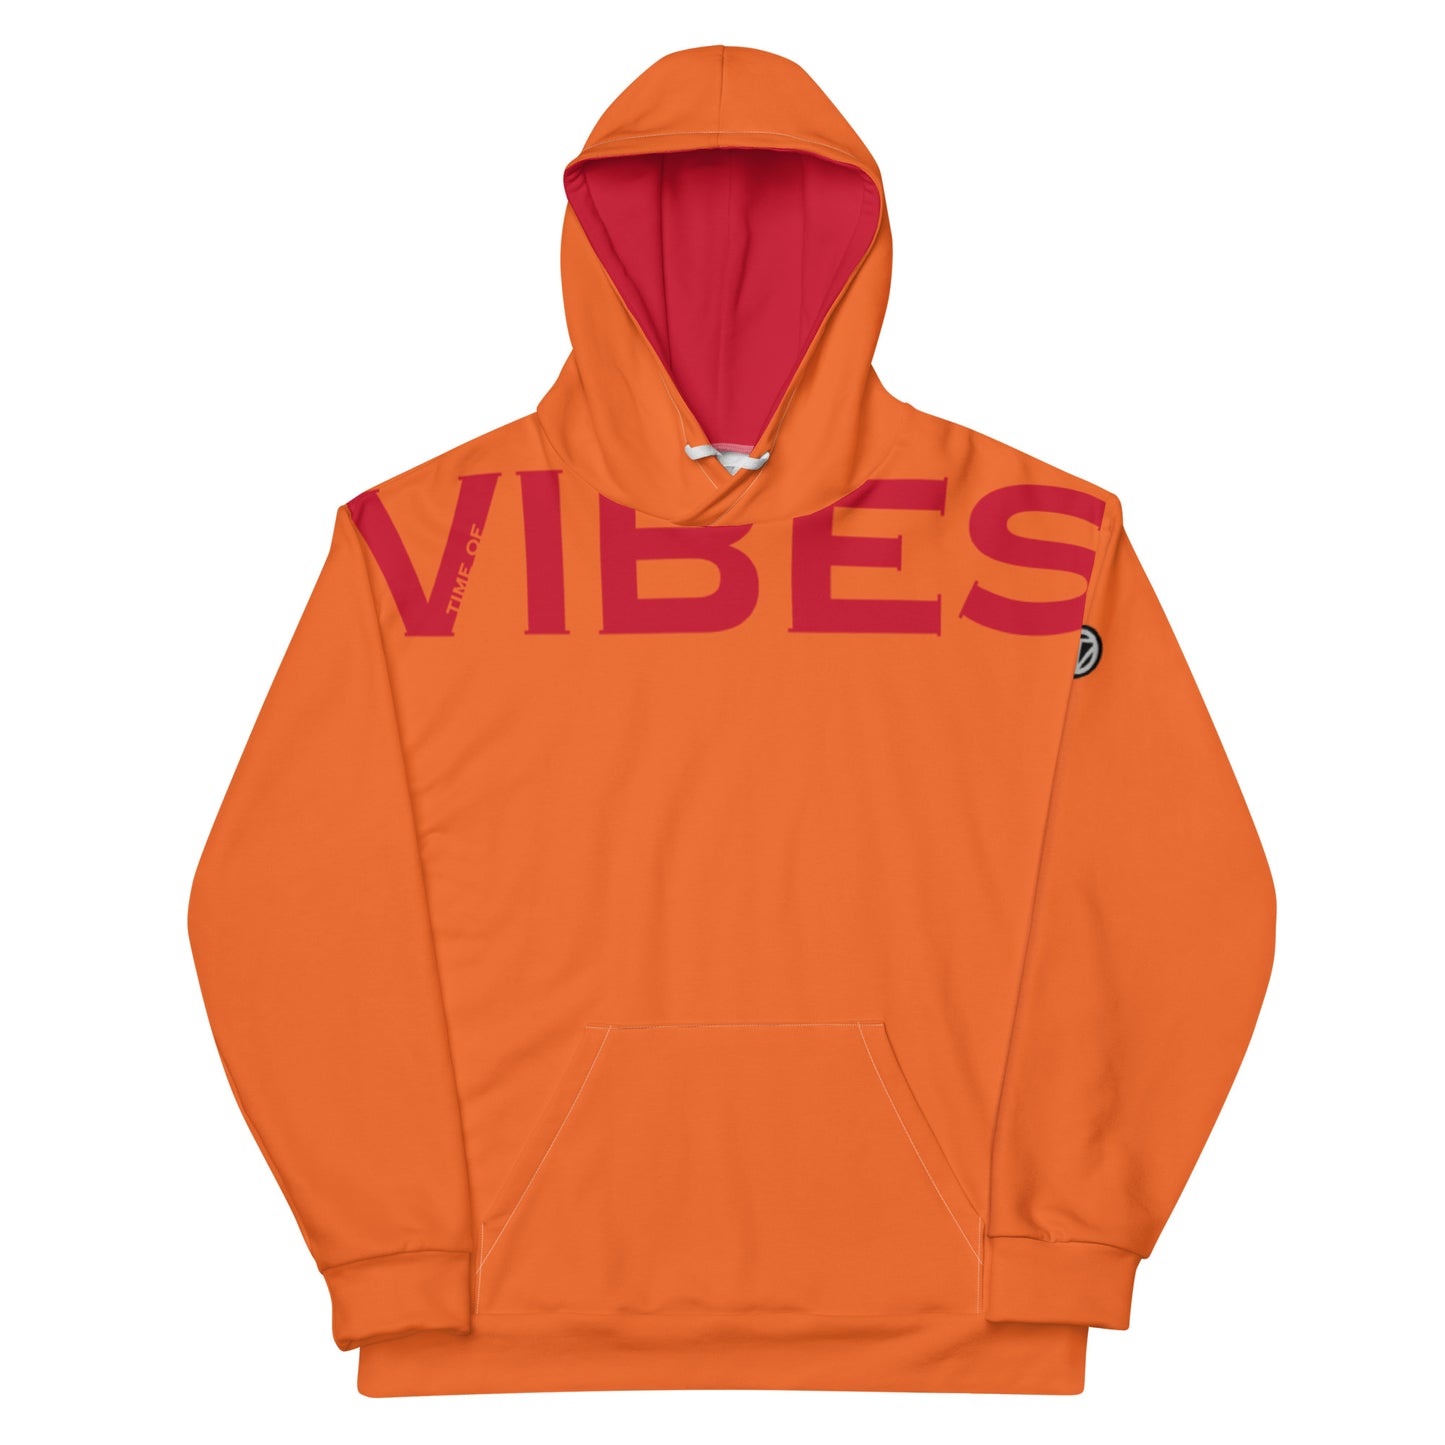 TIME OF VIBES - Premium Hoodie VIBES (Orange/Red) - €99.00